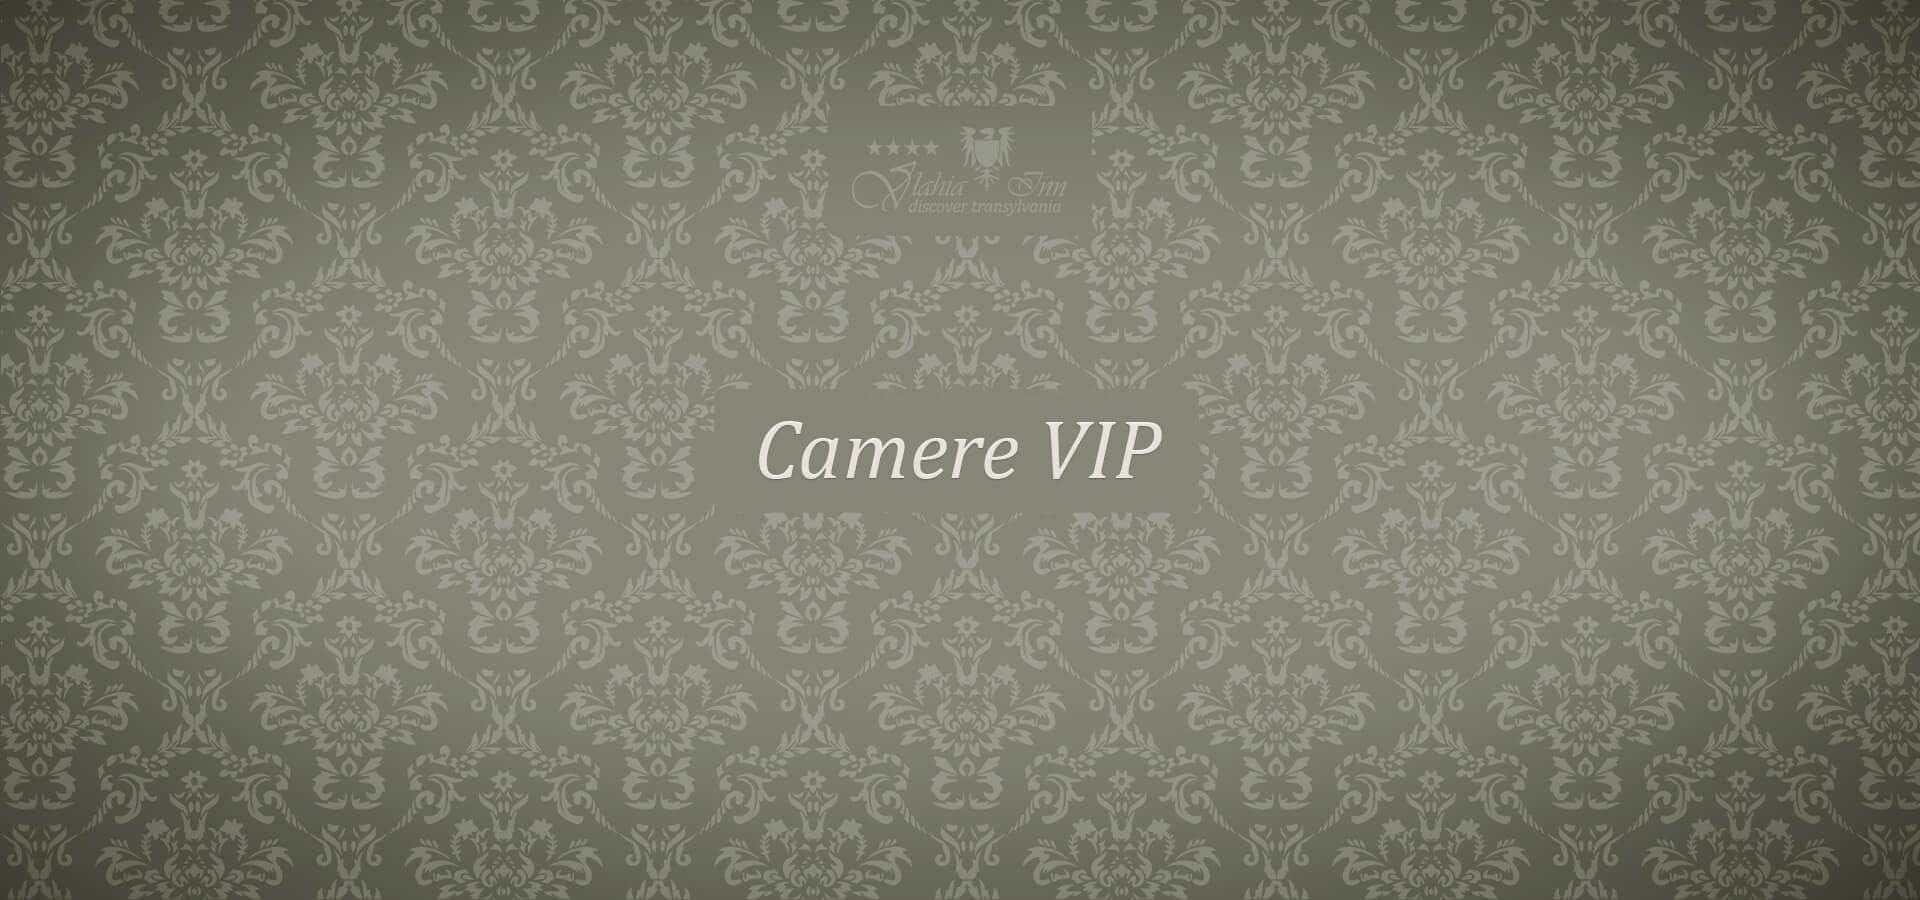 4 imagini redimensionate evenimente- camere VIP